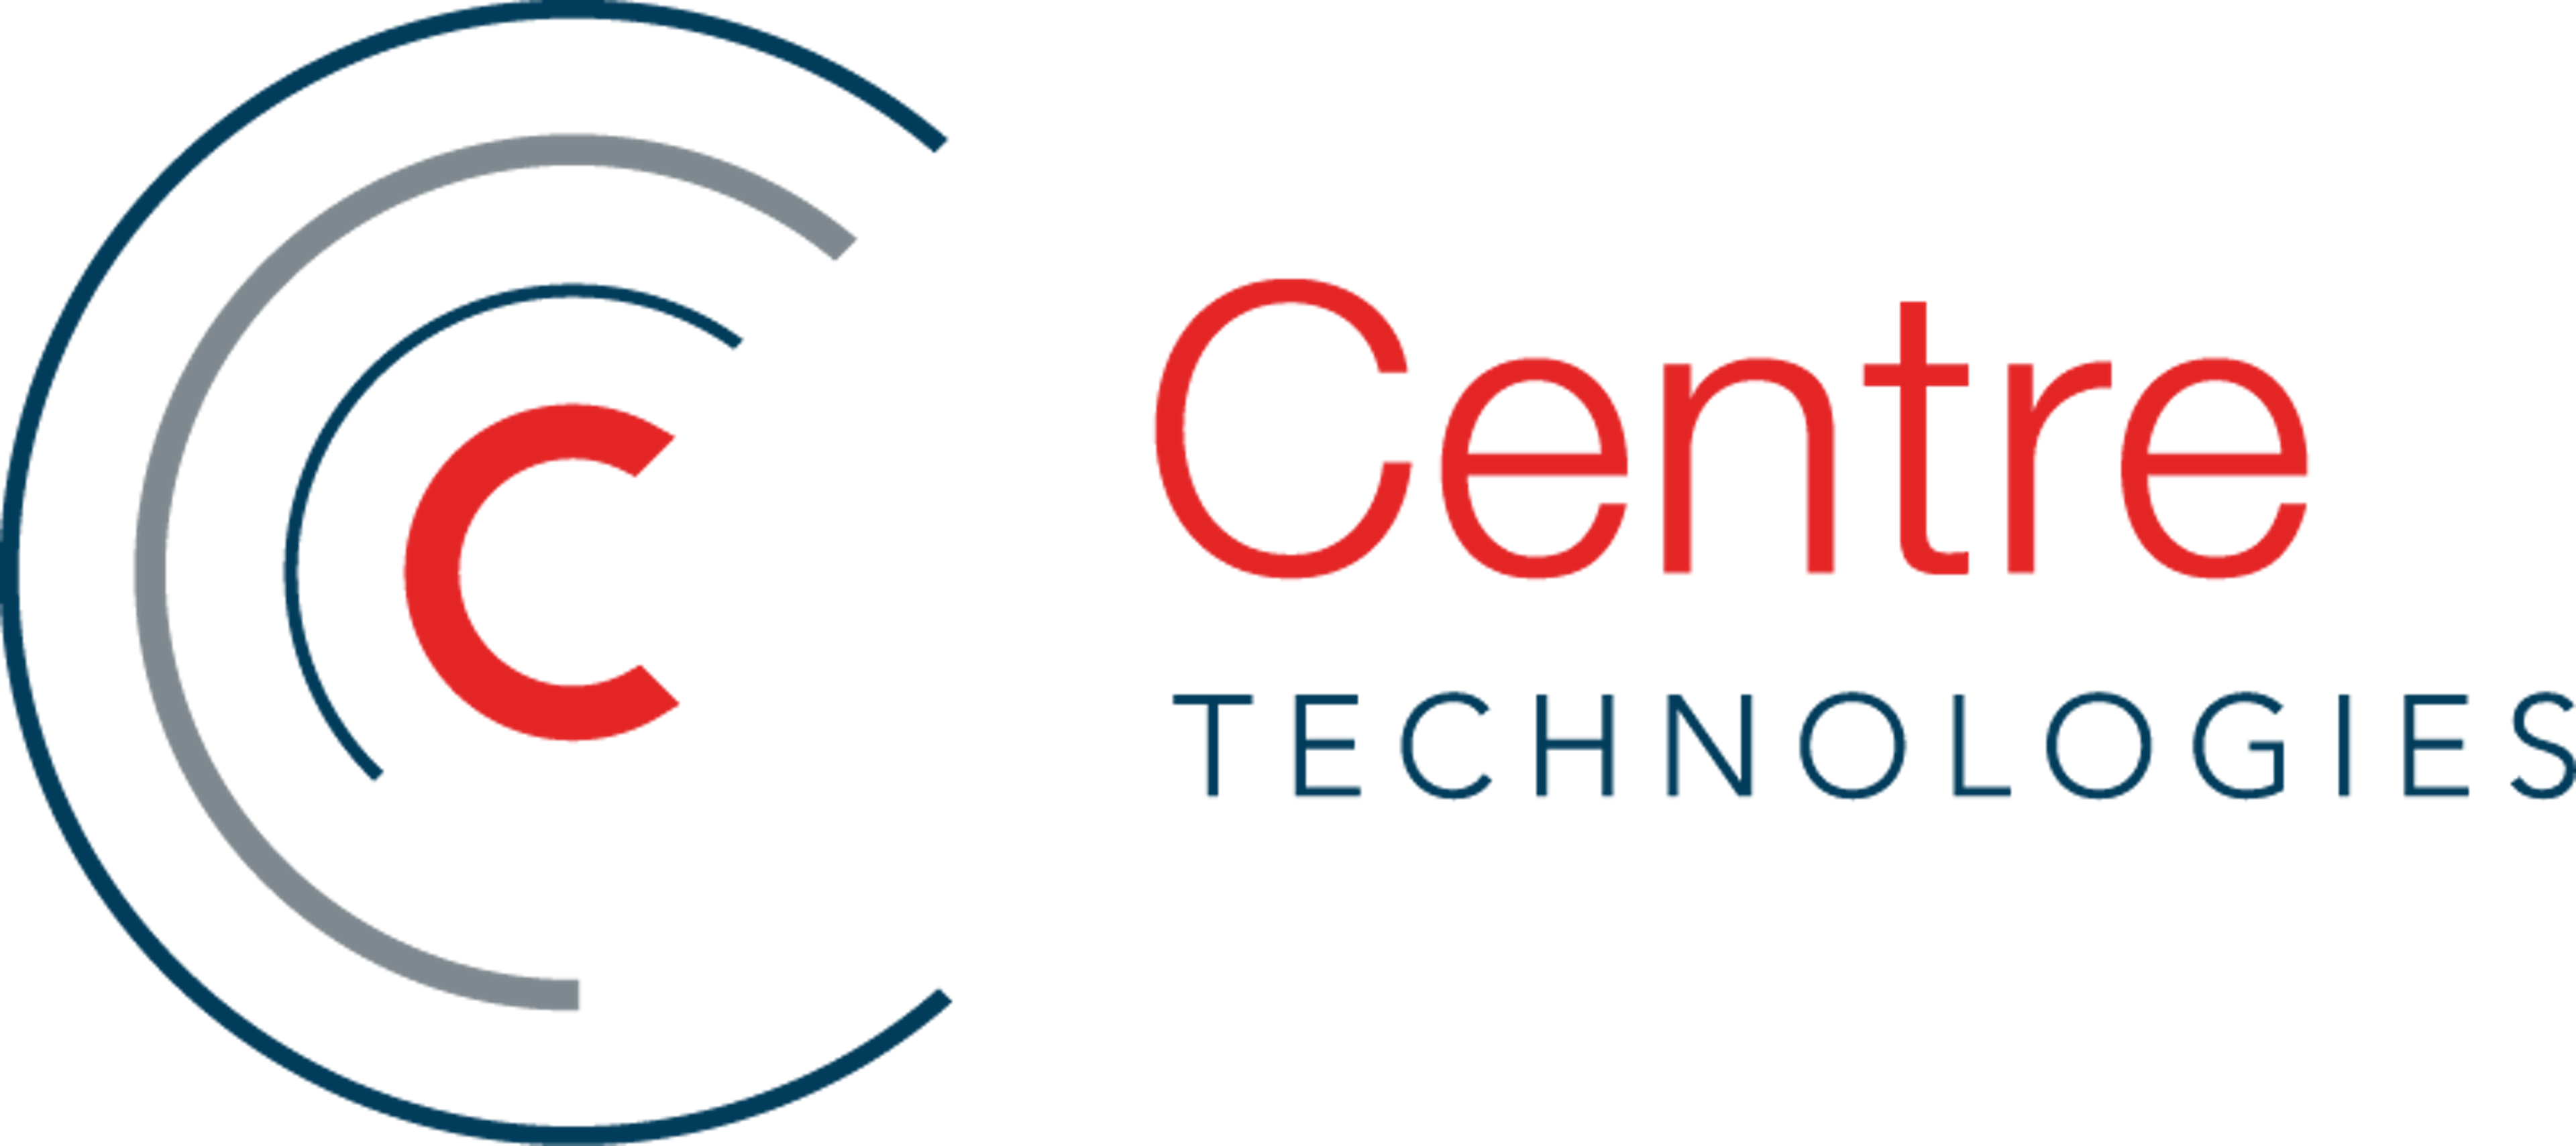 Centretechnologies.com